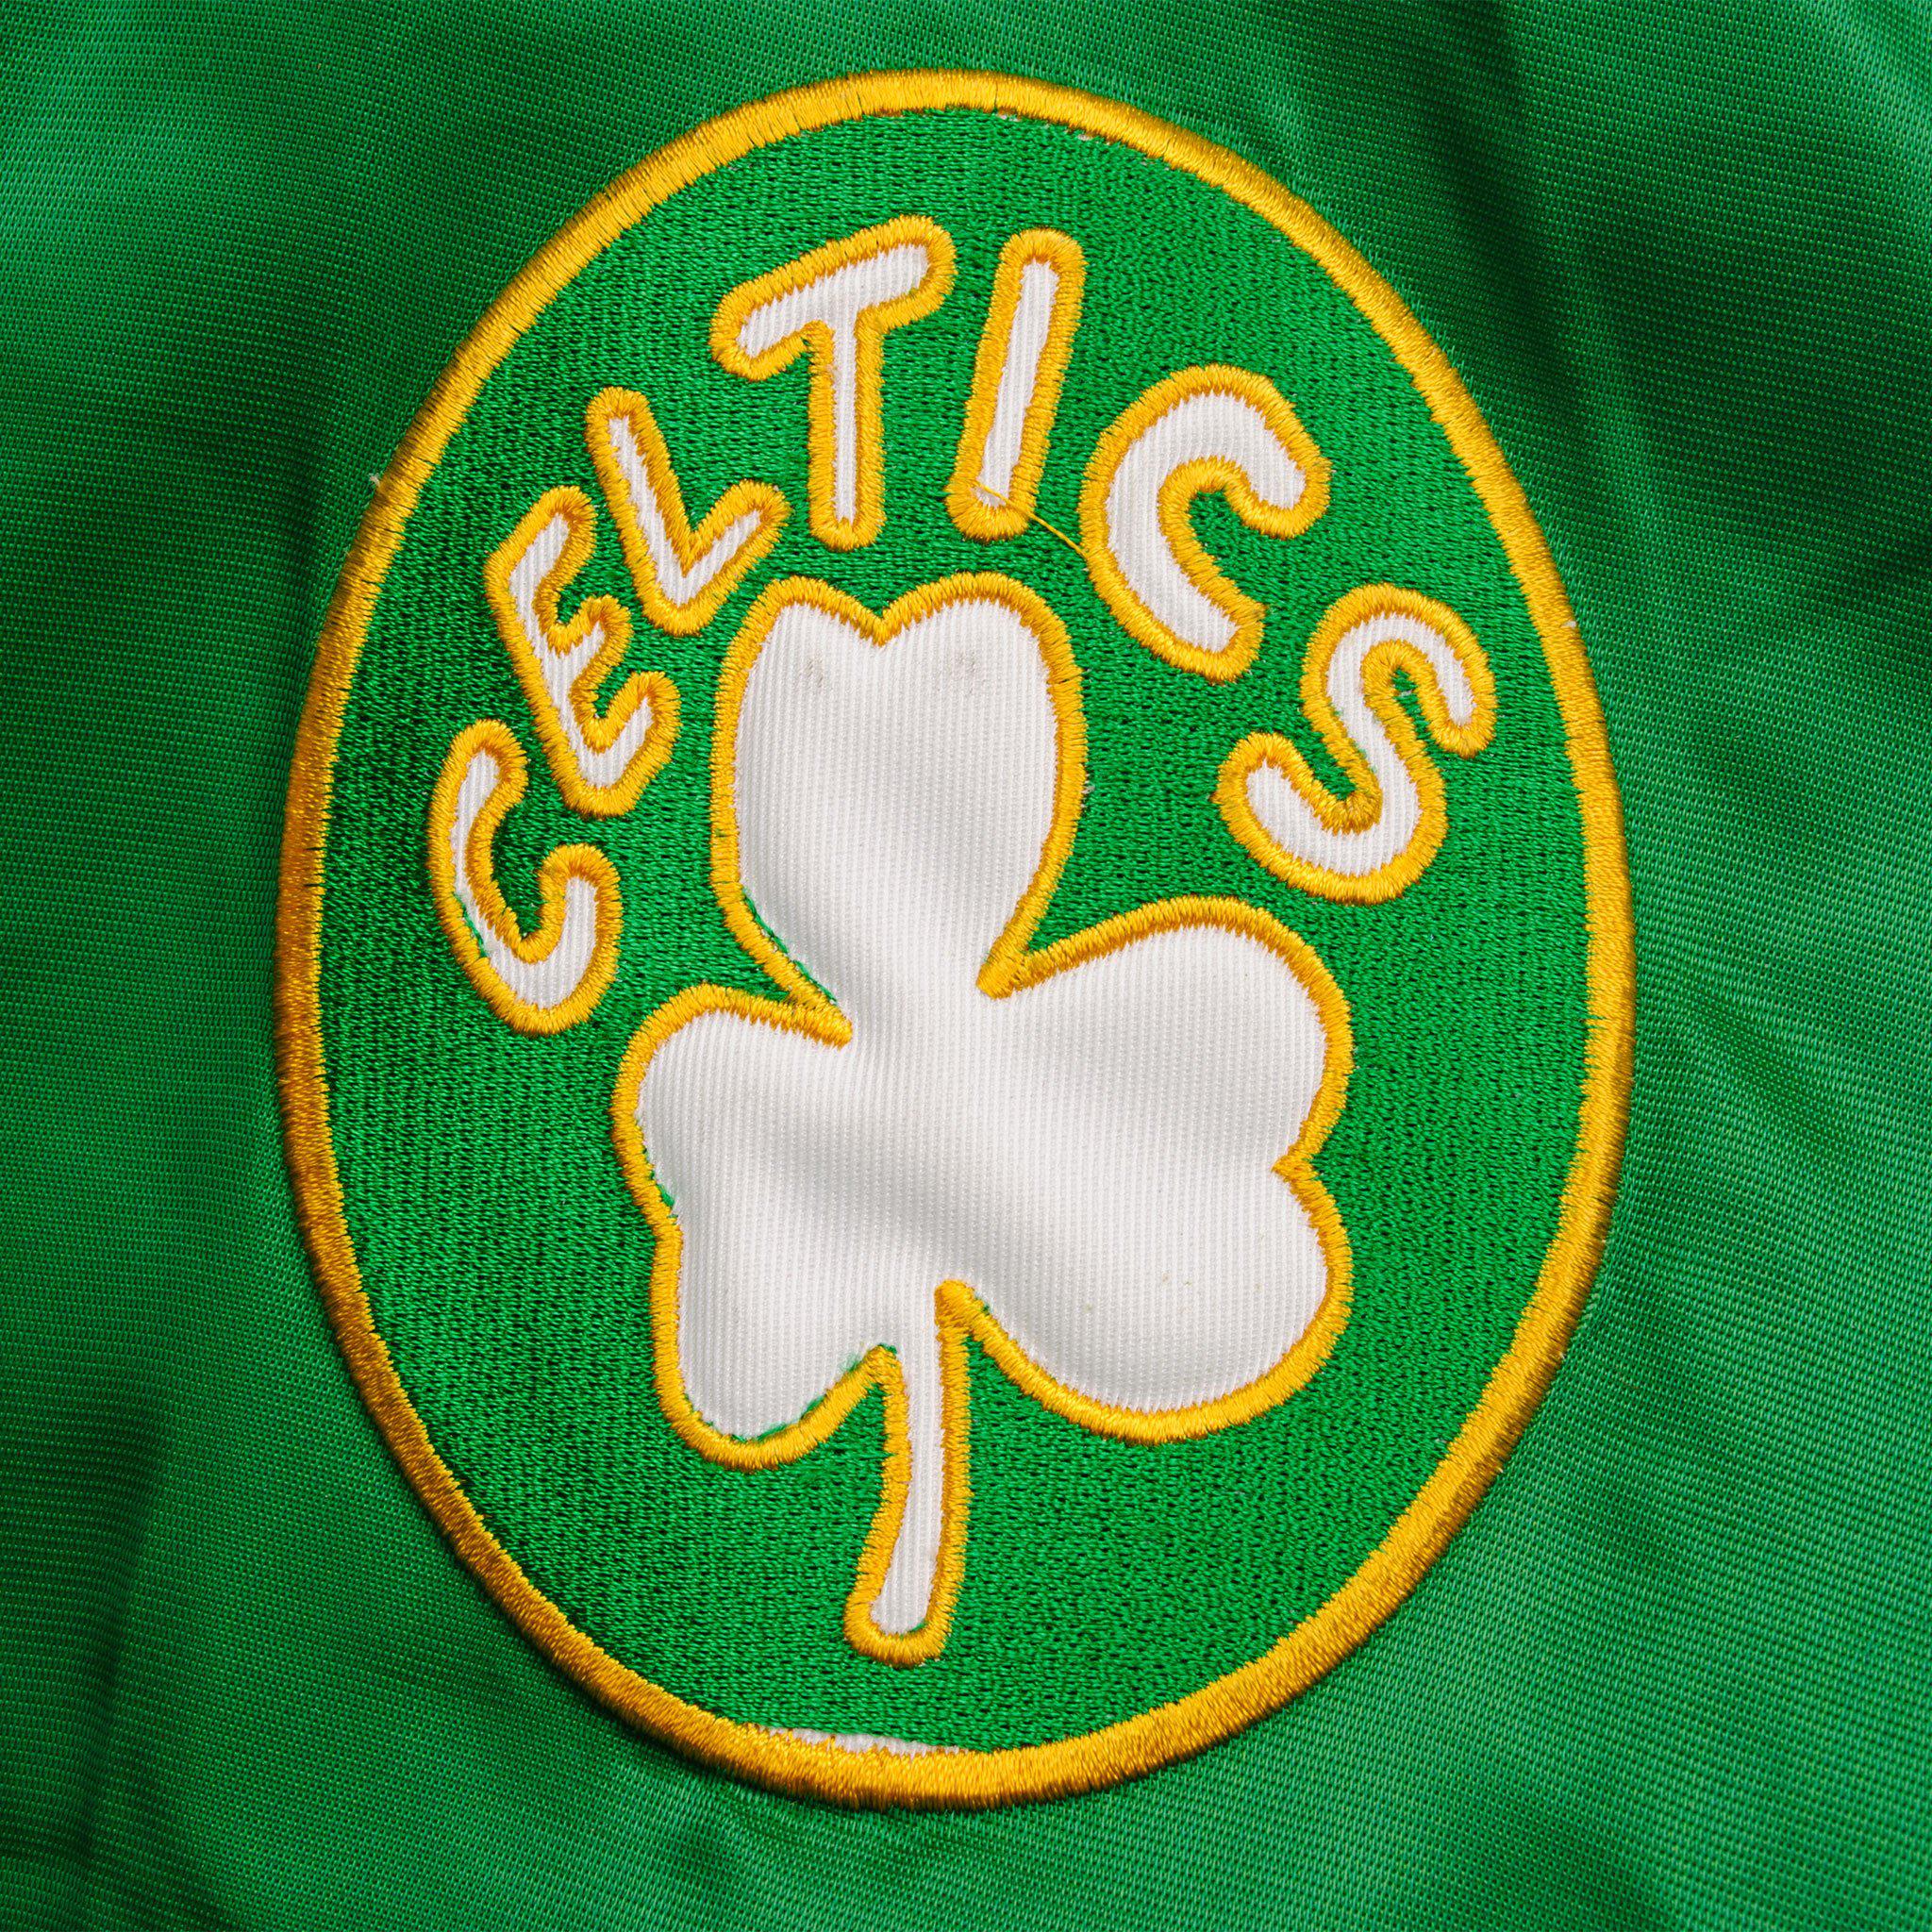 Vintage NBA Boston Celtics Jacket Size 3XL